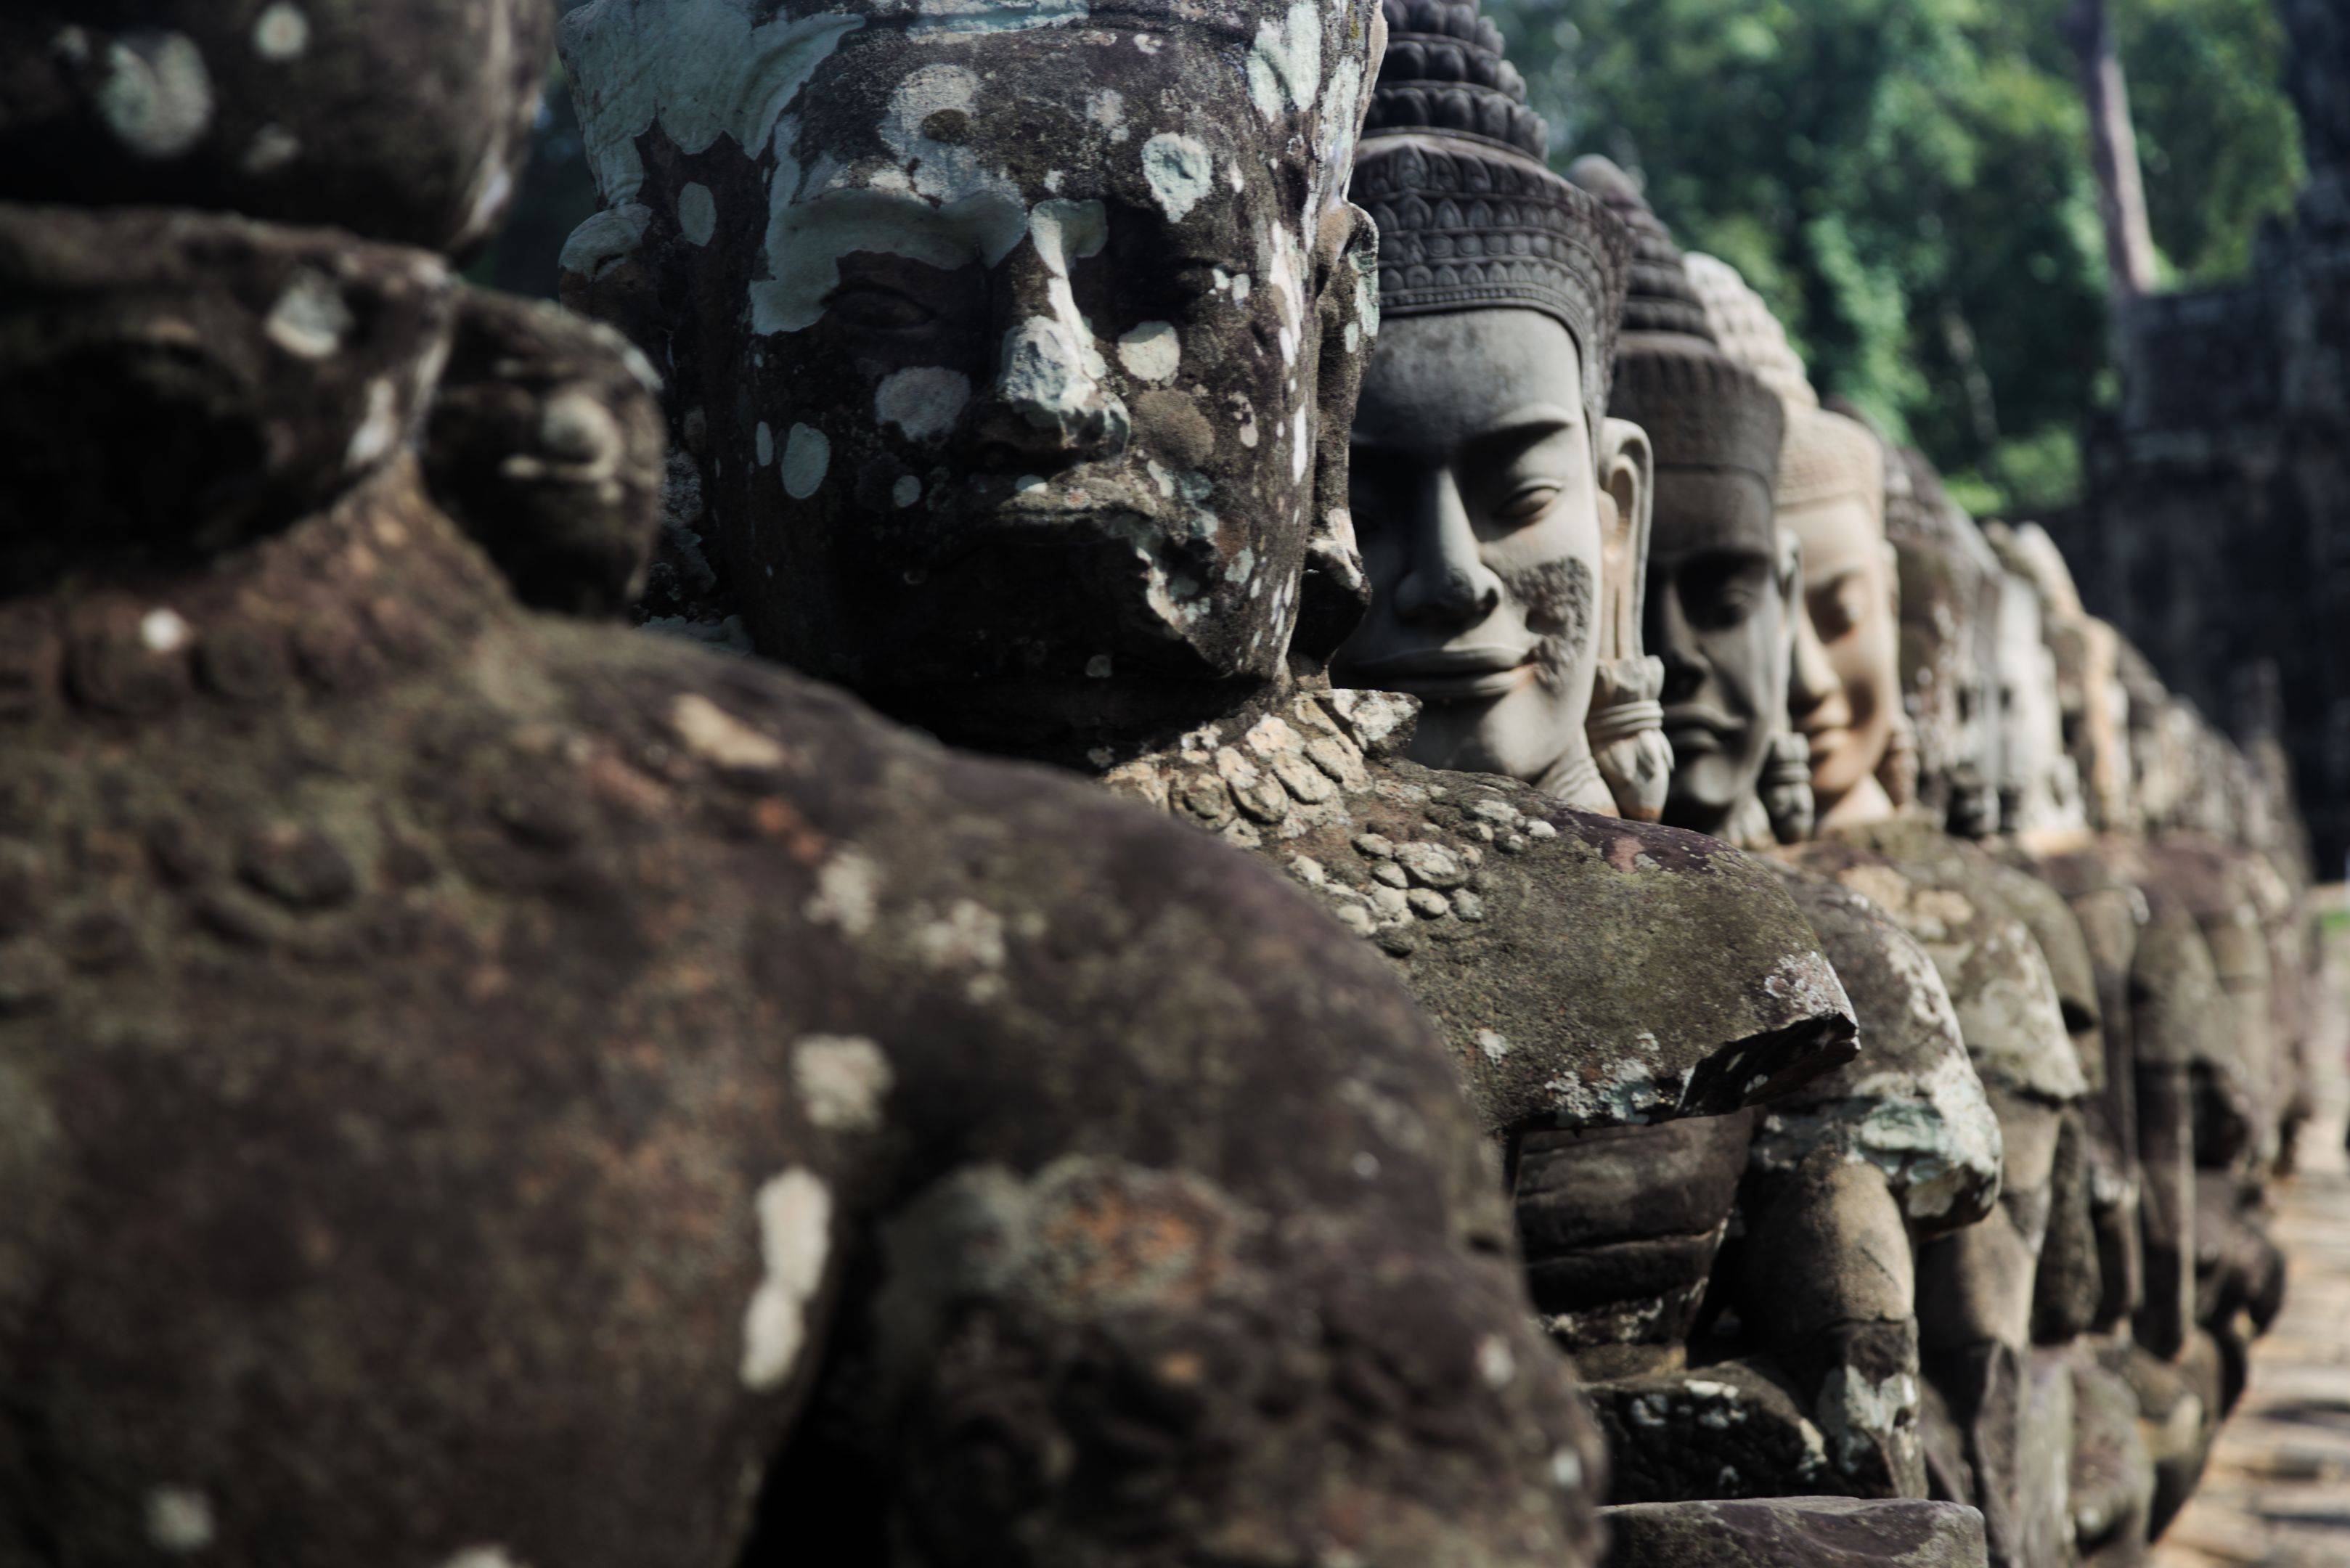 Chasse aux trésors à Angkor